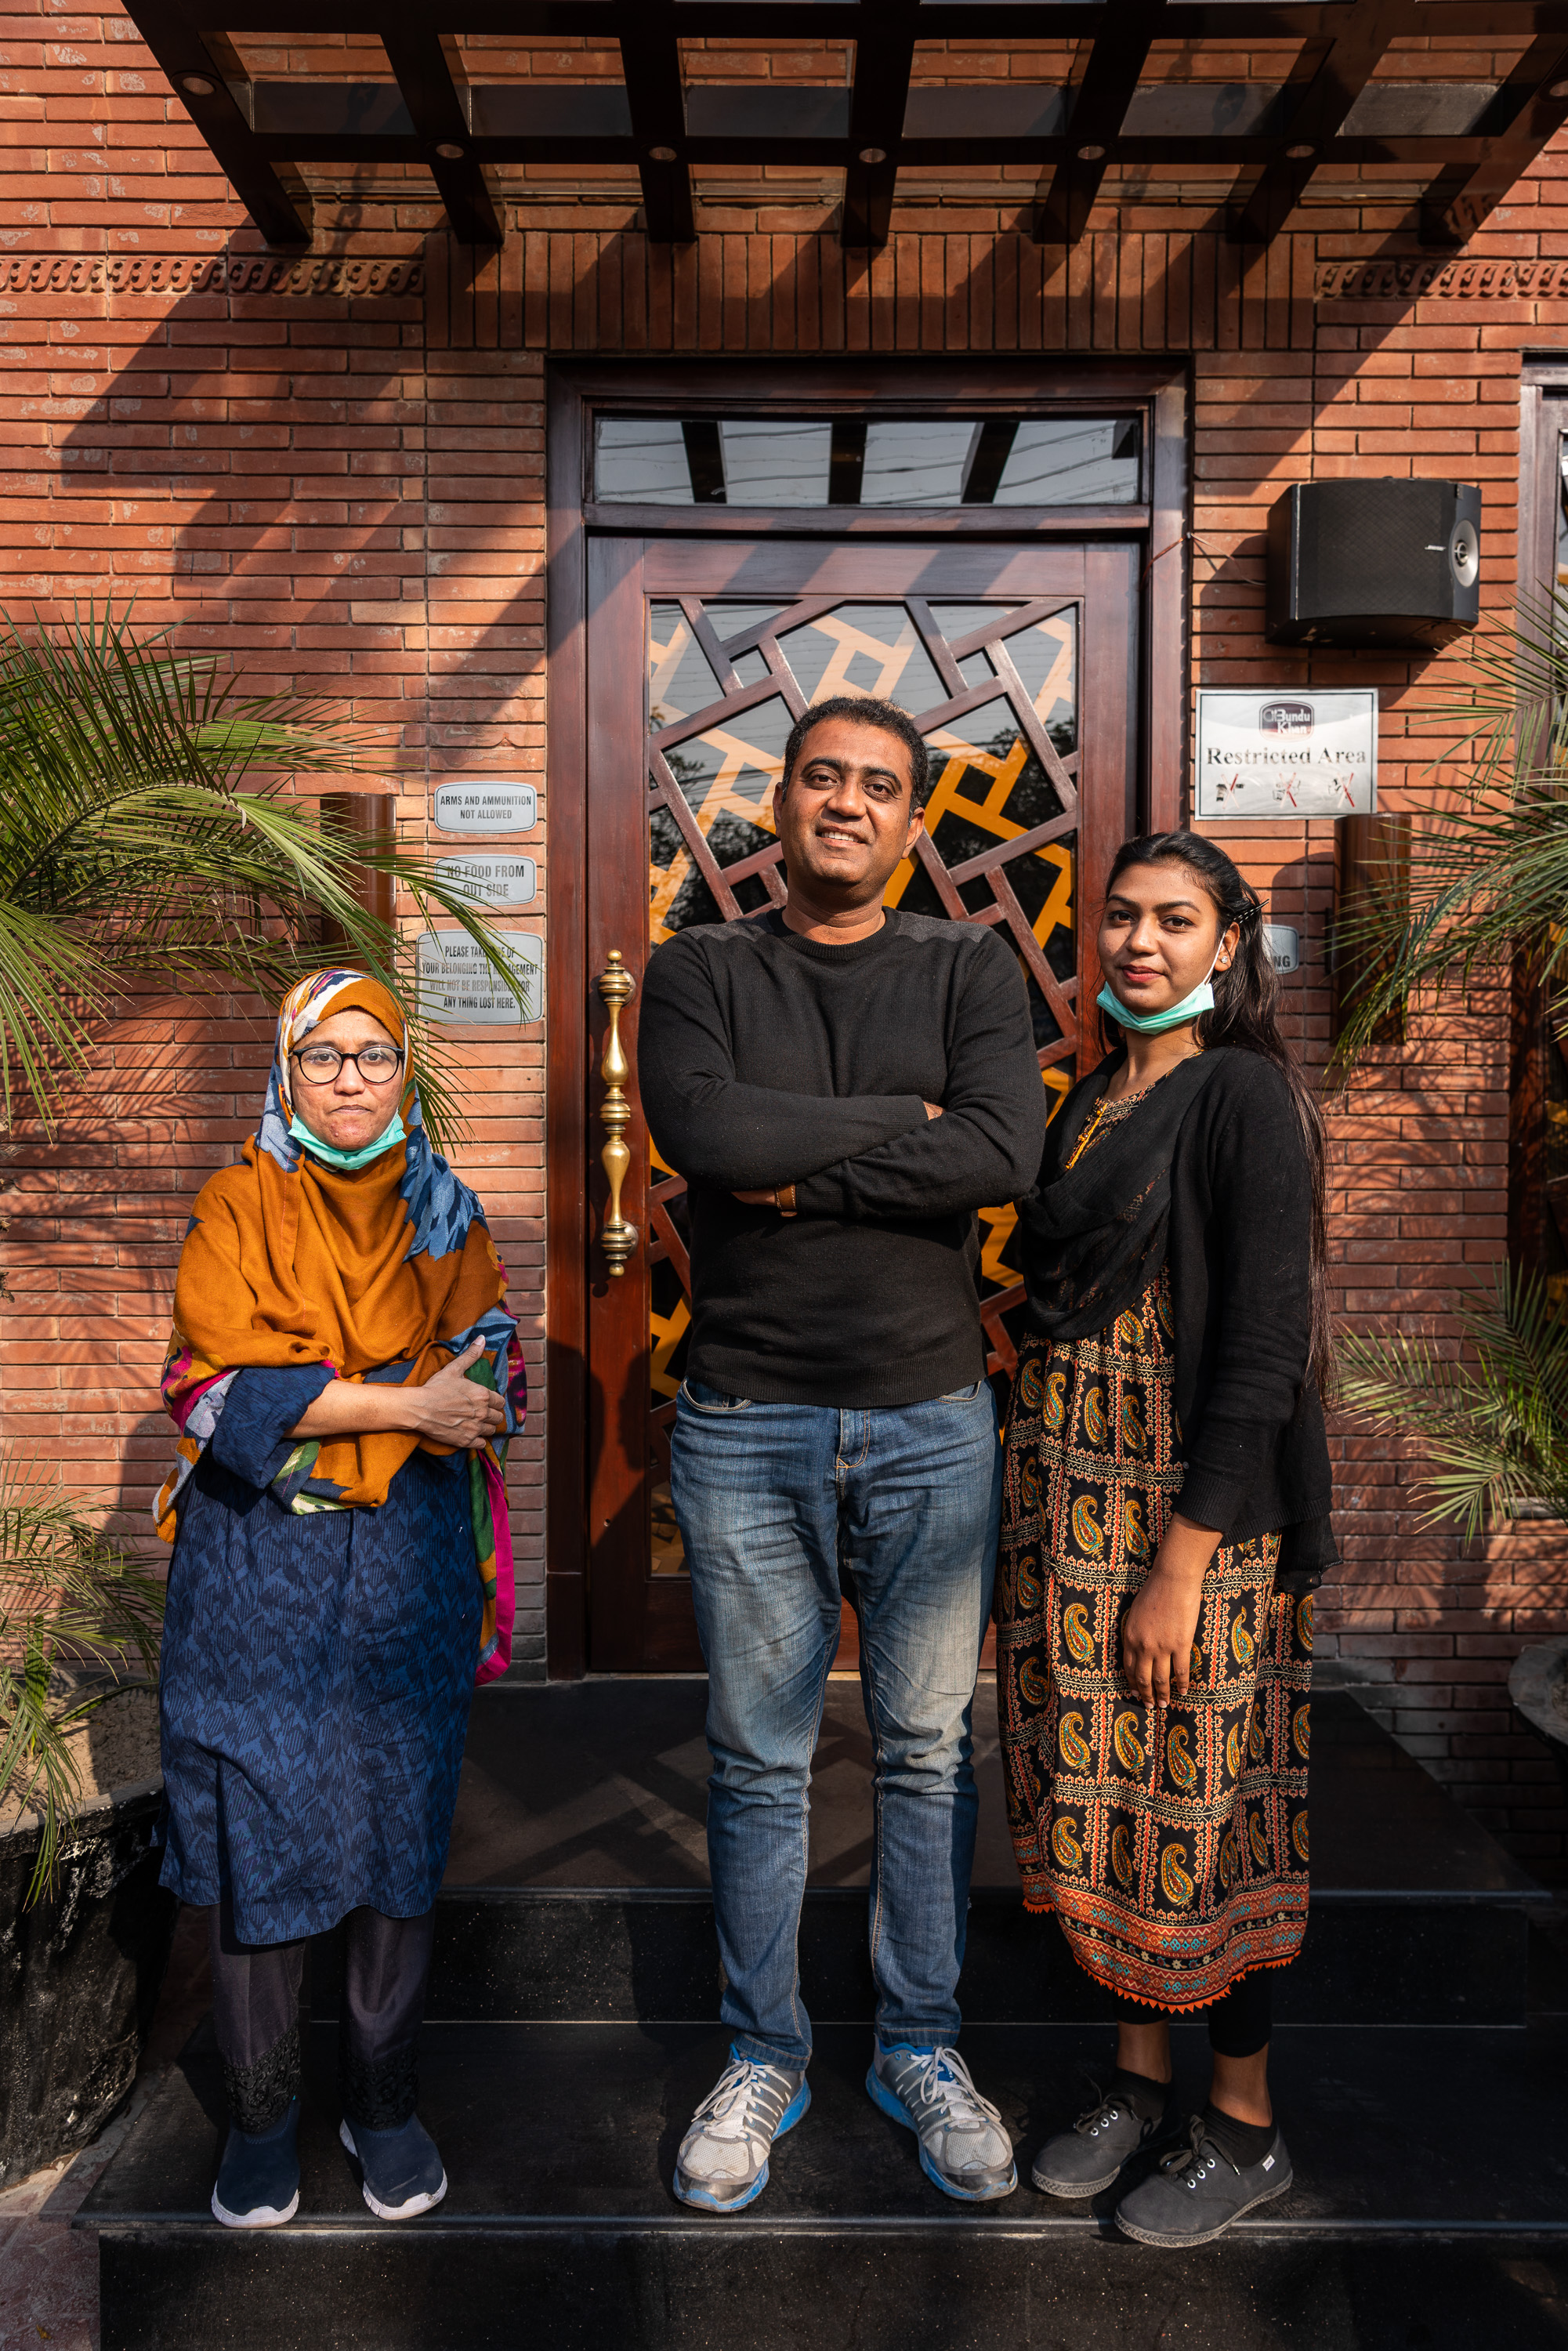 Payyam-e Khurram ist der Gründer der Pink Riders und posiert hier mit zwei seiner Schülerinnen für ein Foto in Lahore, Pakistan. Er musste sich gegen viele Anfeindungen zur Wehr setzen und ist heute stolz darauf, 2018 die Pink Riders gegründet zu haben. Er arbeitet eigentlich als Veranstaltungsmanager (photo: Philipp Breu)